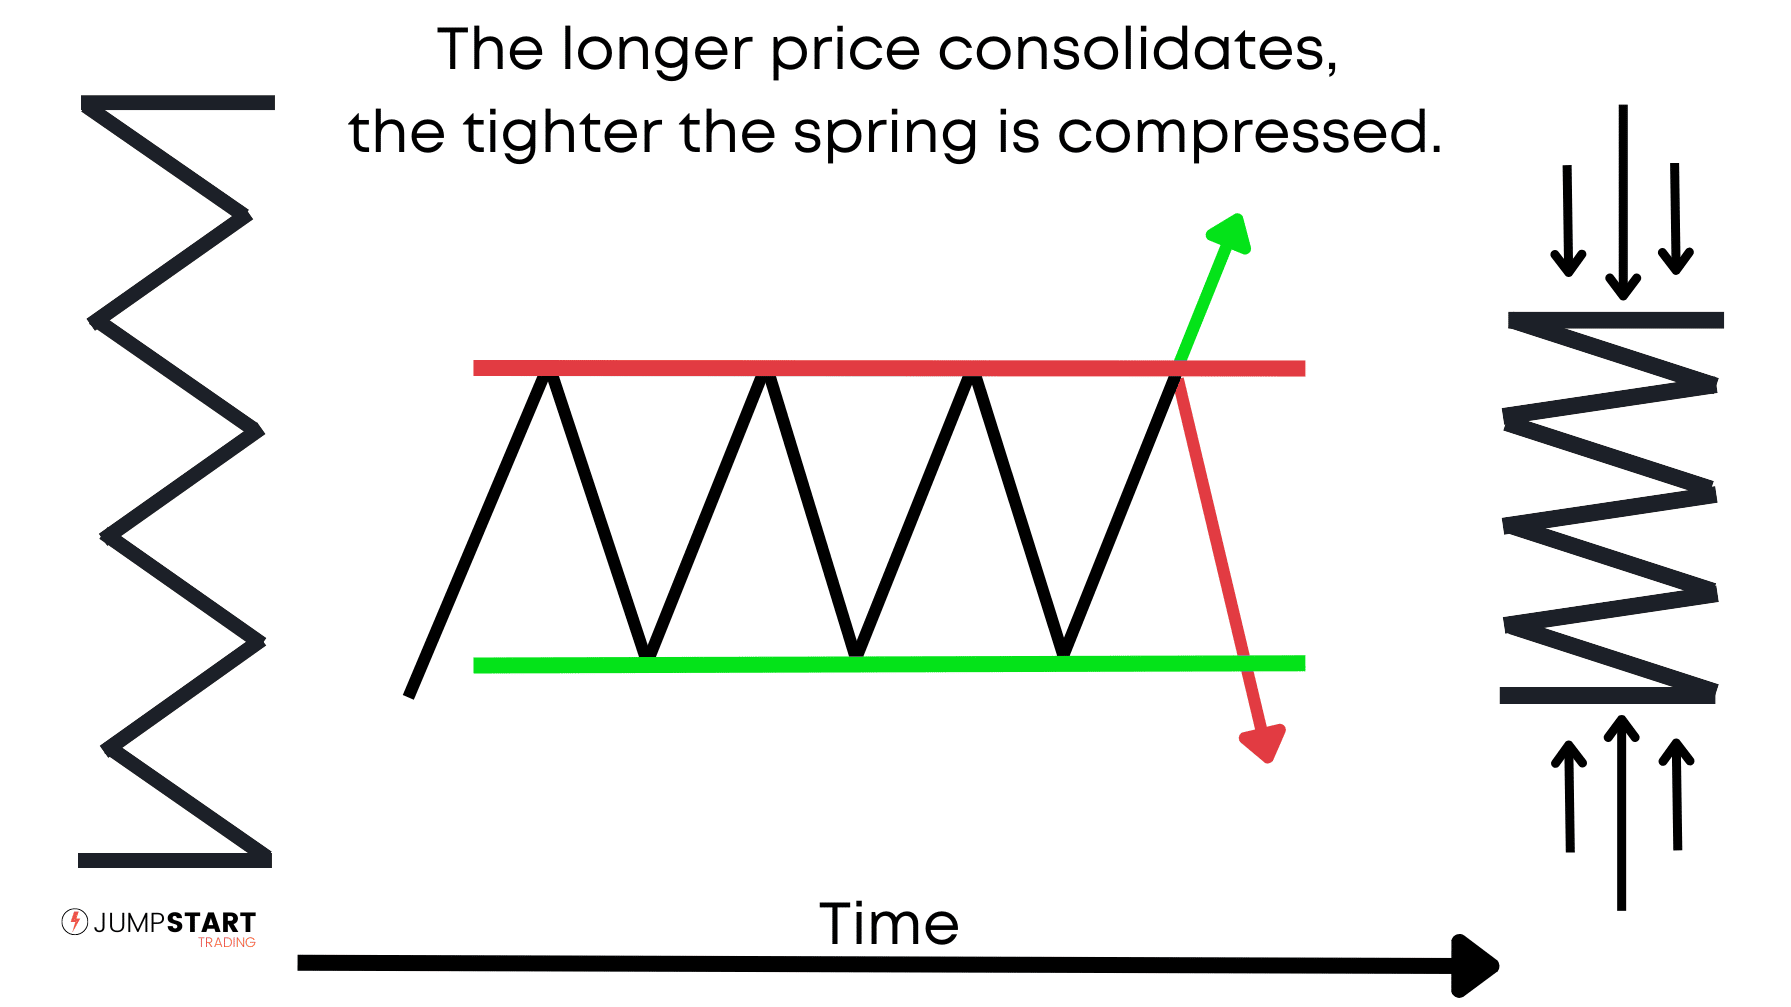 La primavera se comprime a medida que el precio se consolida por más tiempo